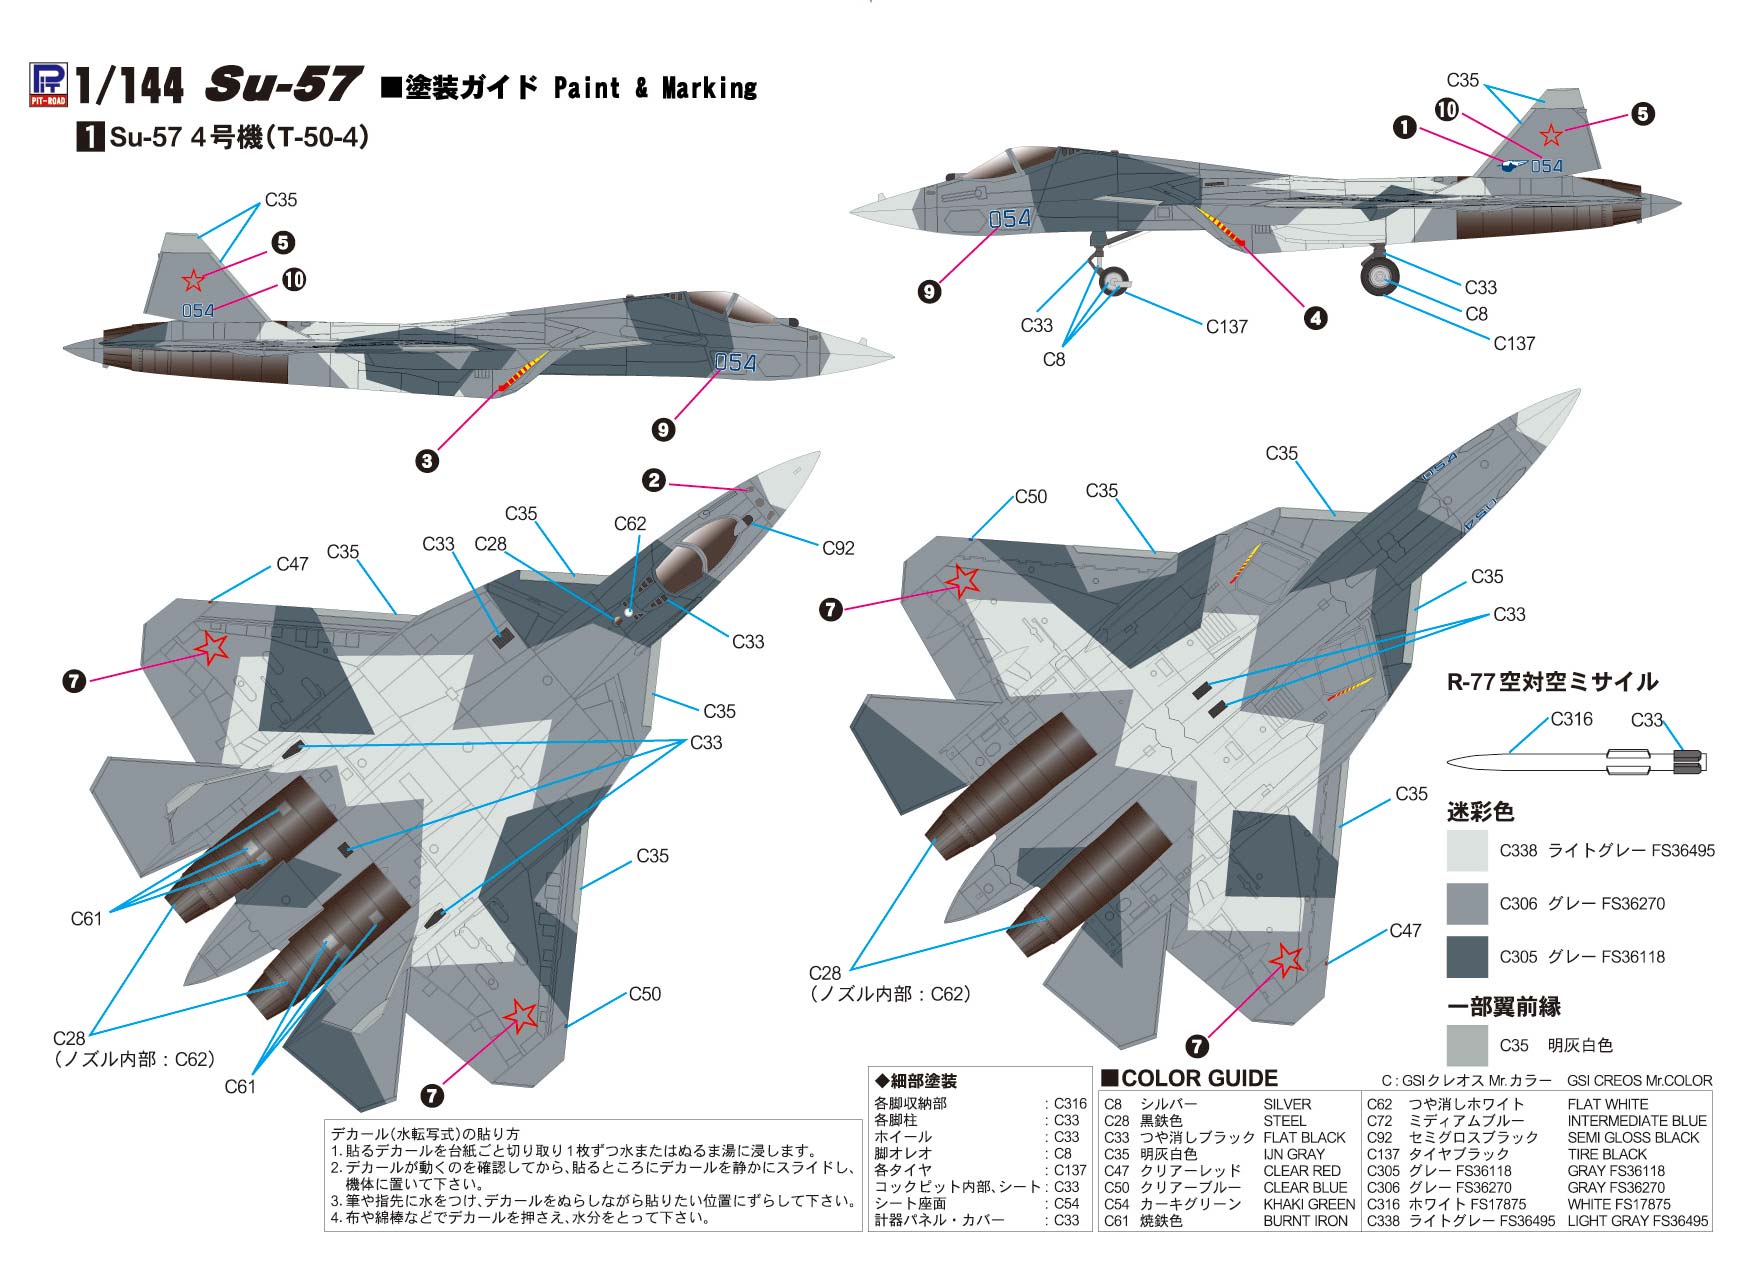 1/144 ロシア空軍 戦闘機 Su-57 - ウインドウを閉じる